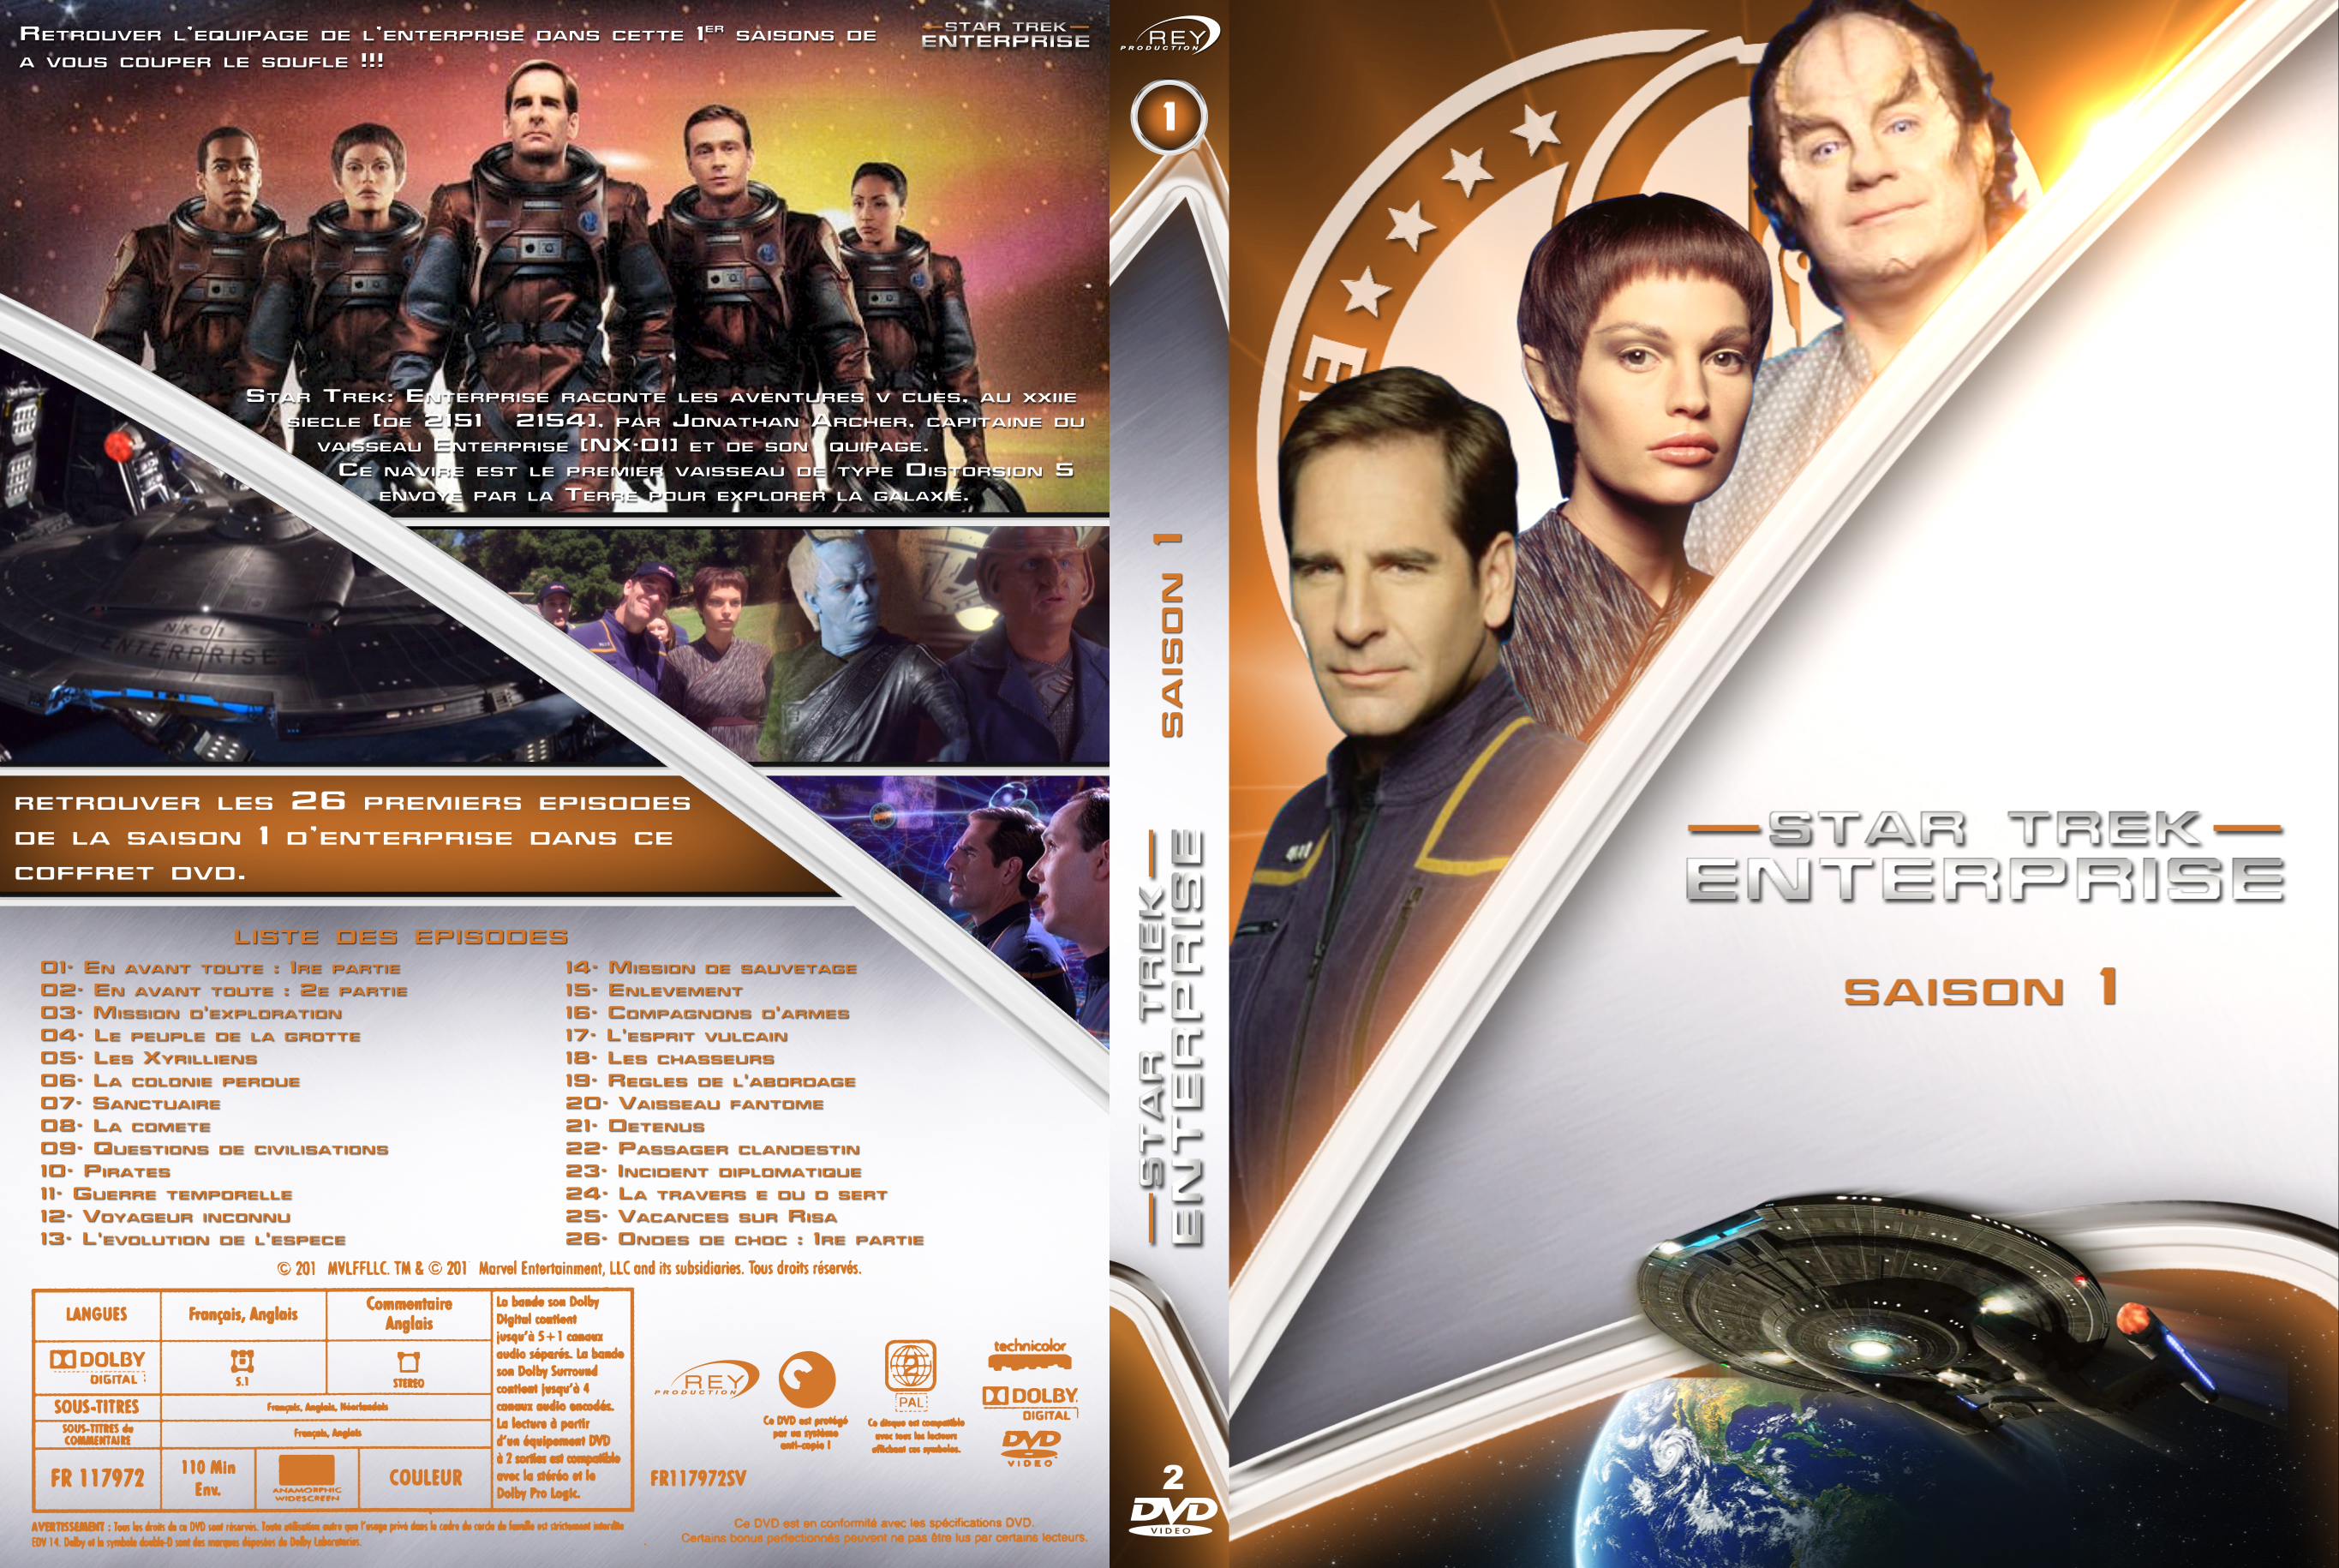 Jaquette DVD Star Trek Enterprise saison 1 custom